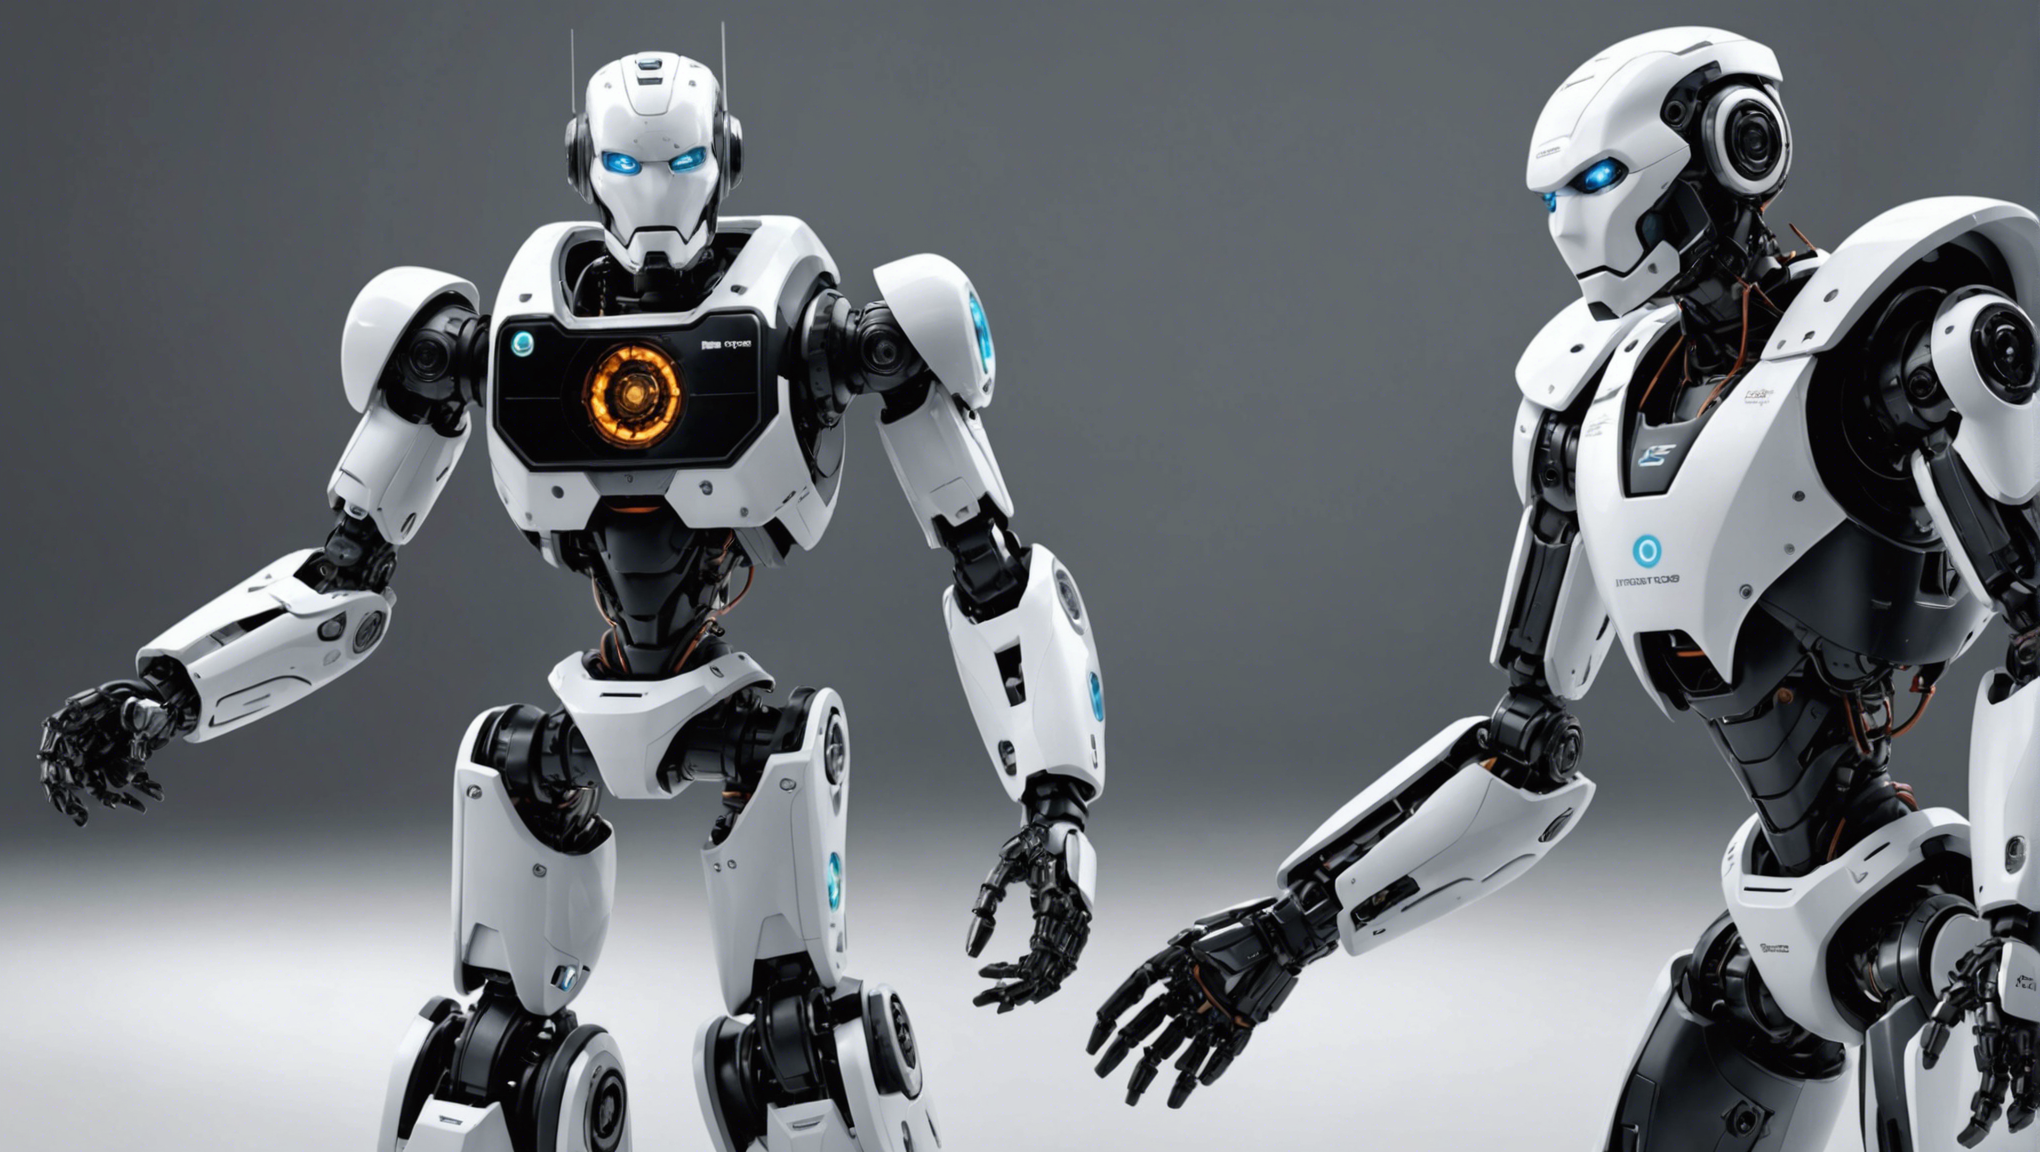 découvrez les incroyables robots de l'innorobo 2014 : une révolution technologique à portée de main! ne manquez pas cet événement technologique incontournable qui vous transporte au cœur de l'innovation robotique.